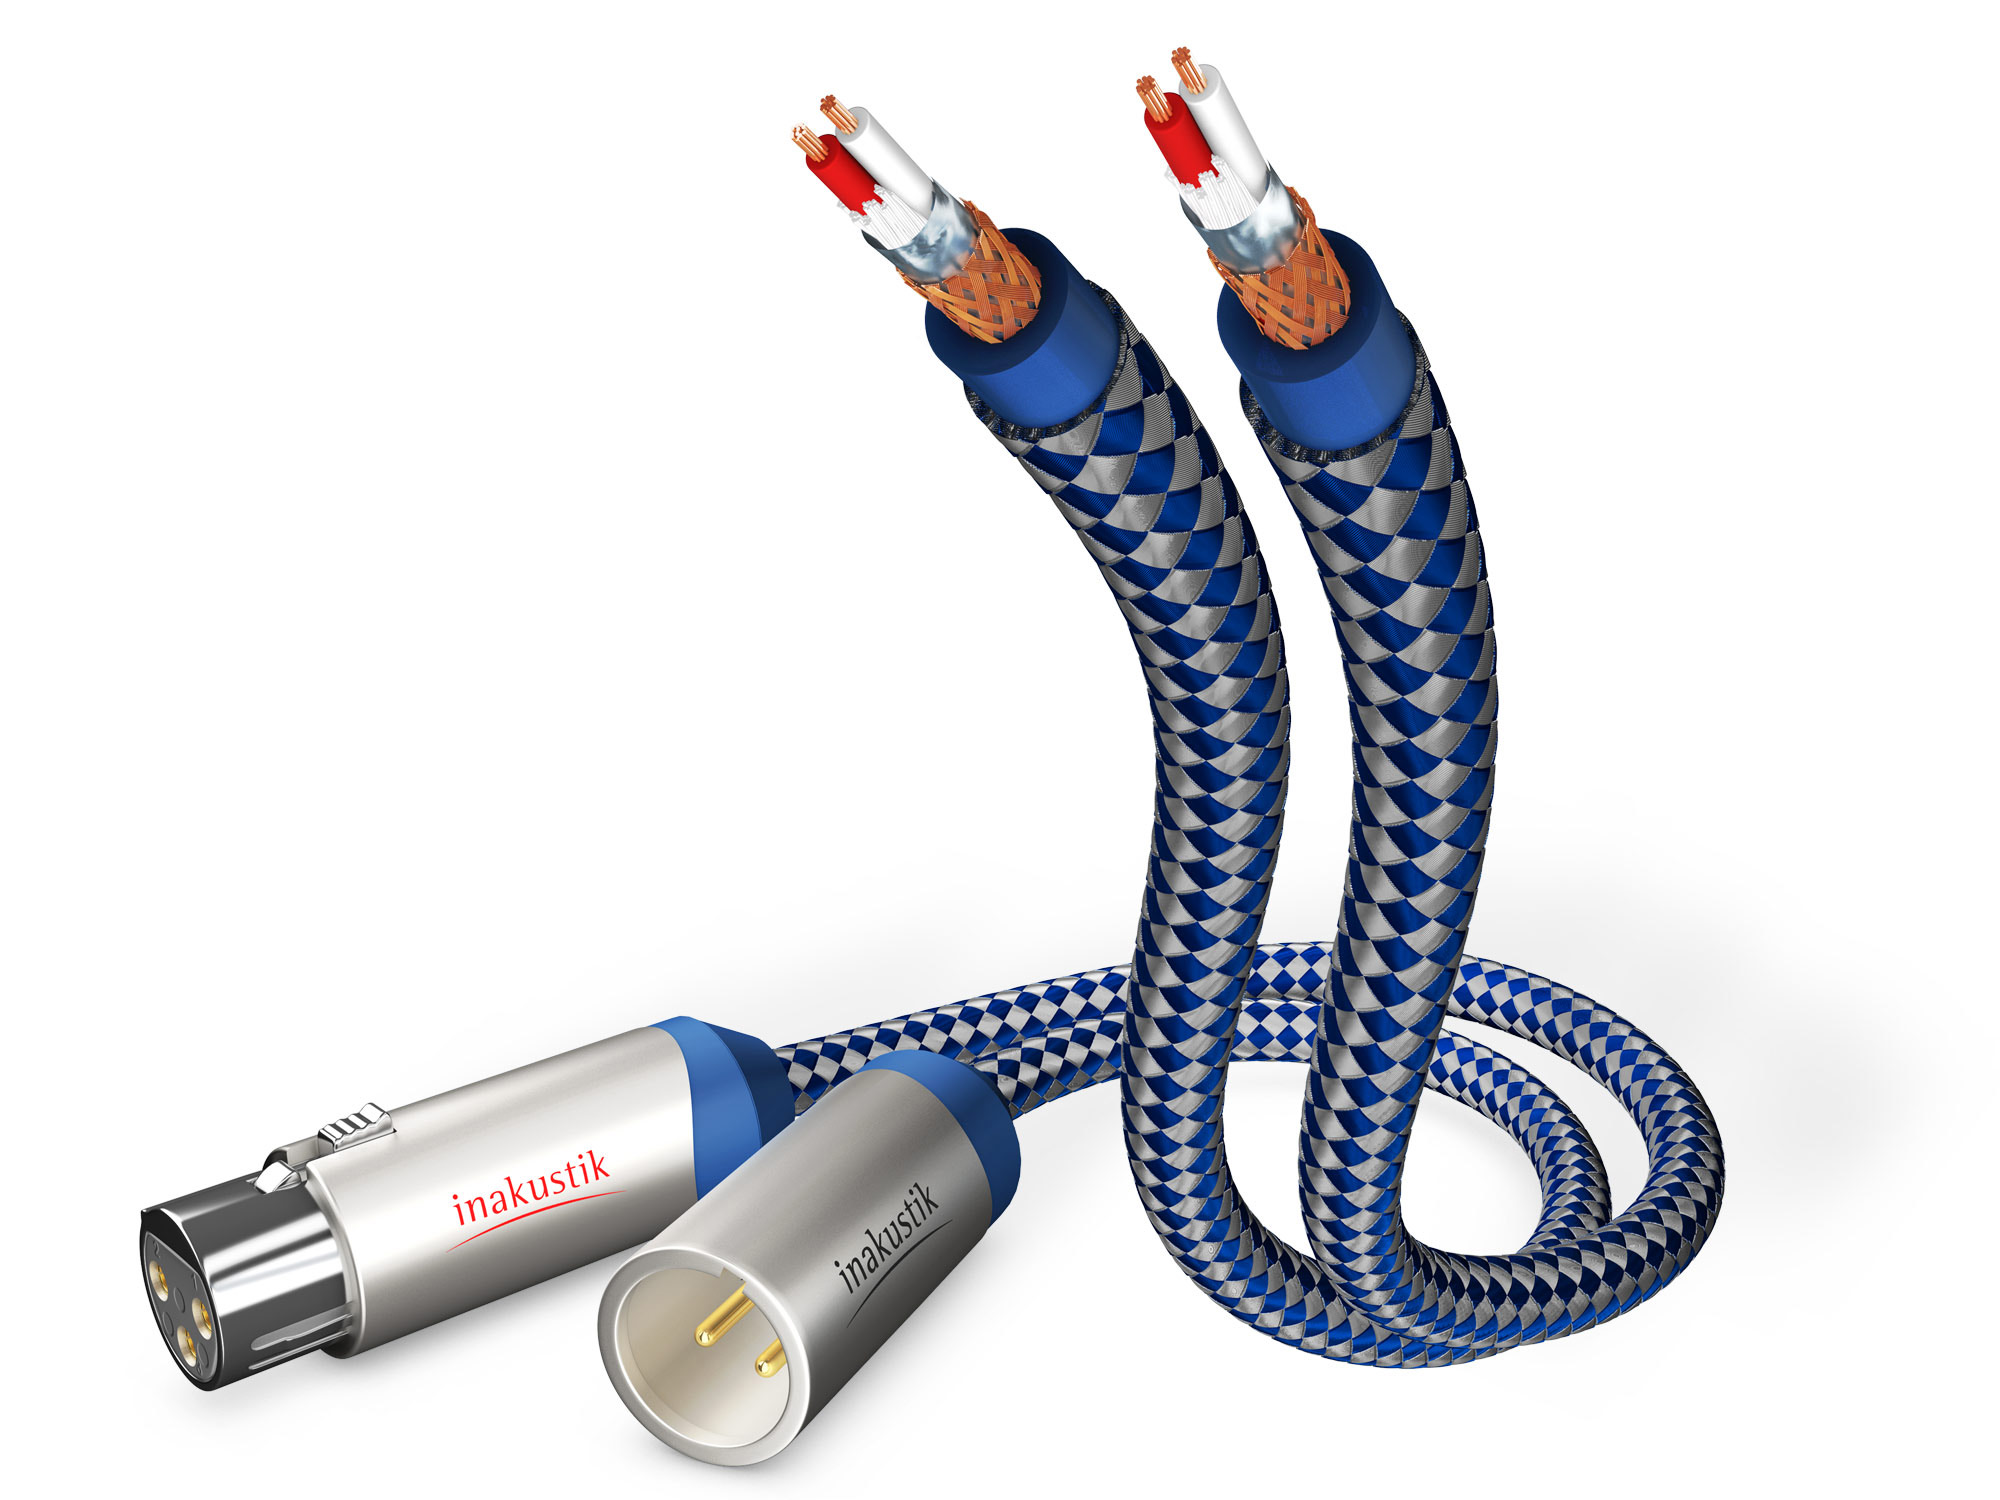 INAKUSTIK Premium XLR 5m audio cable